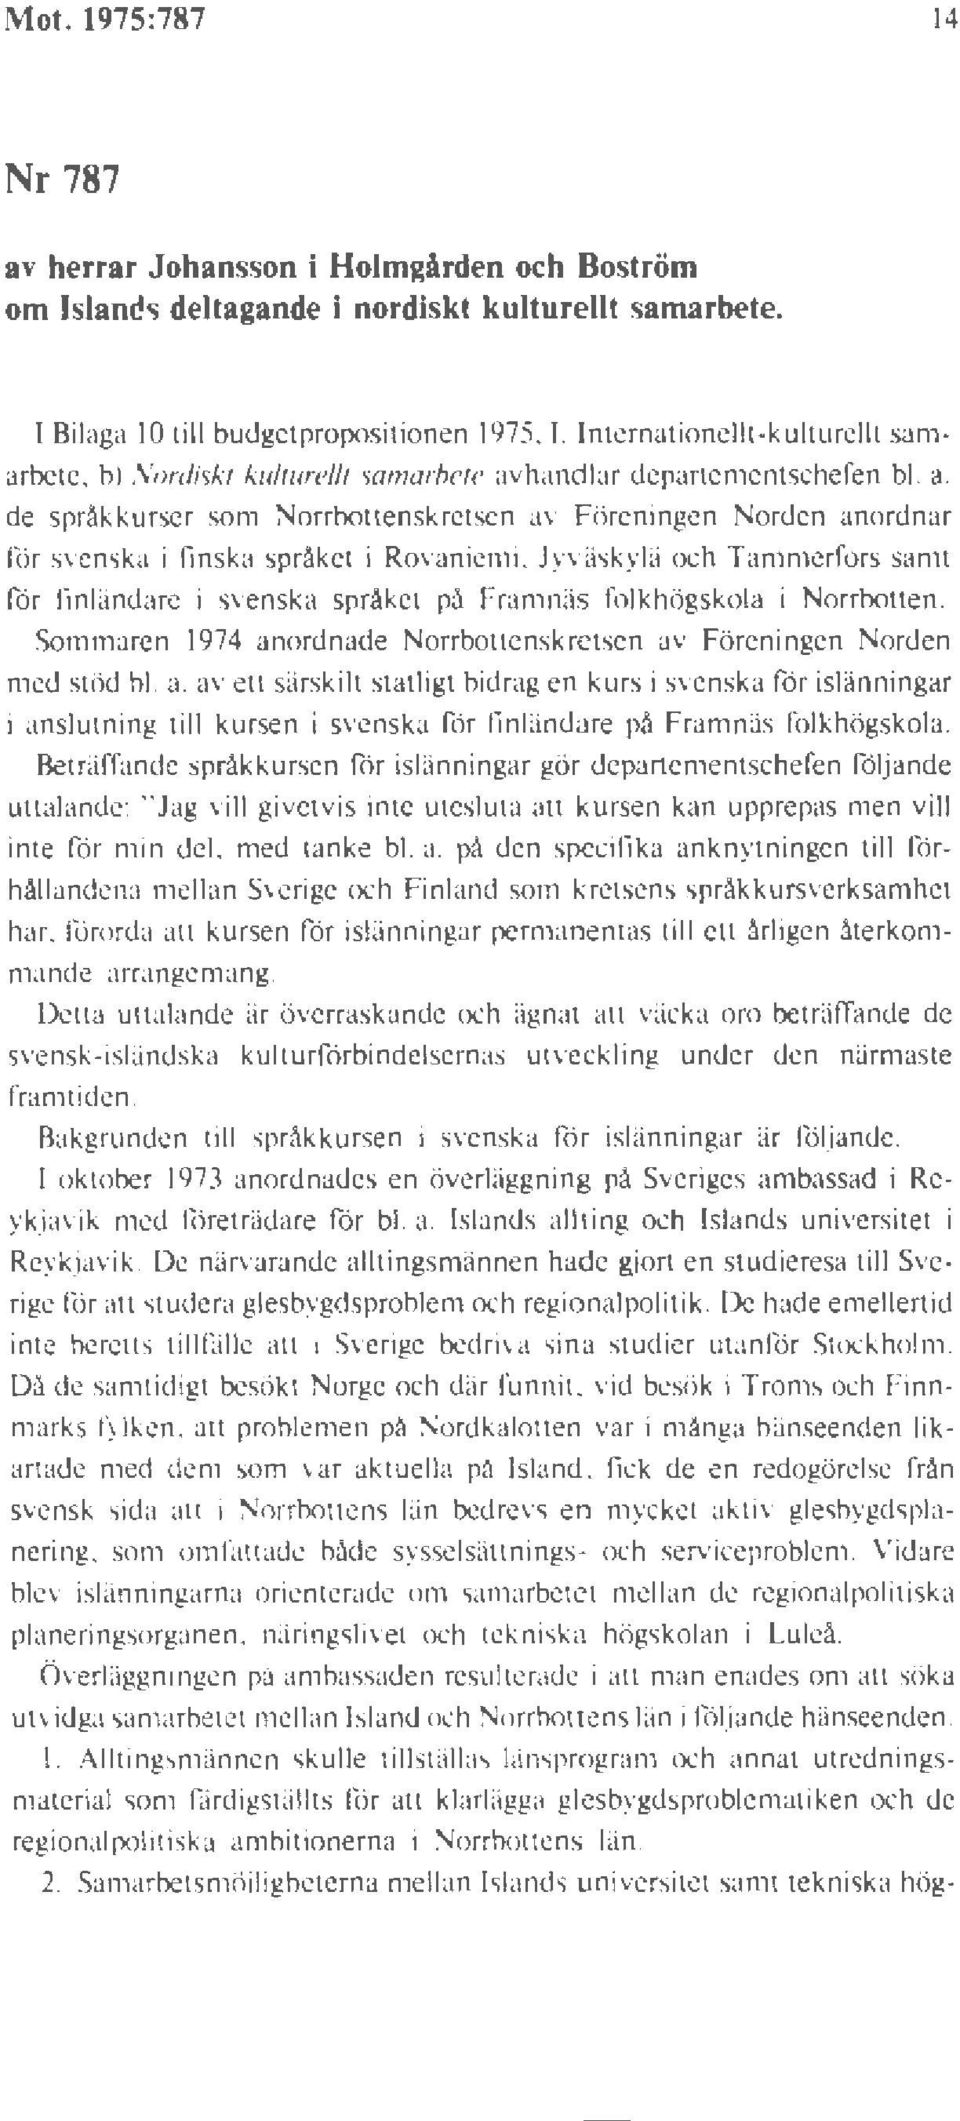 Jyväskylii och Tammerfors samt för linlandare i svenska språket på Framnäs folkhögskola i orrbollen. Sommaren 1974 an